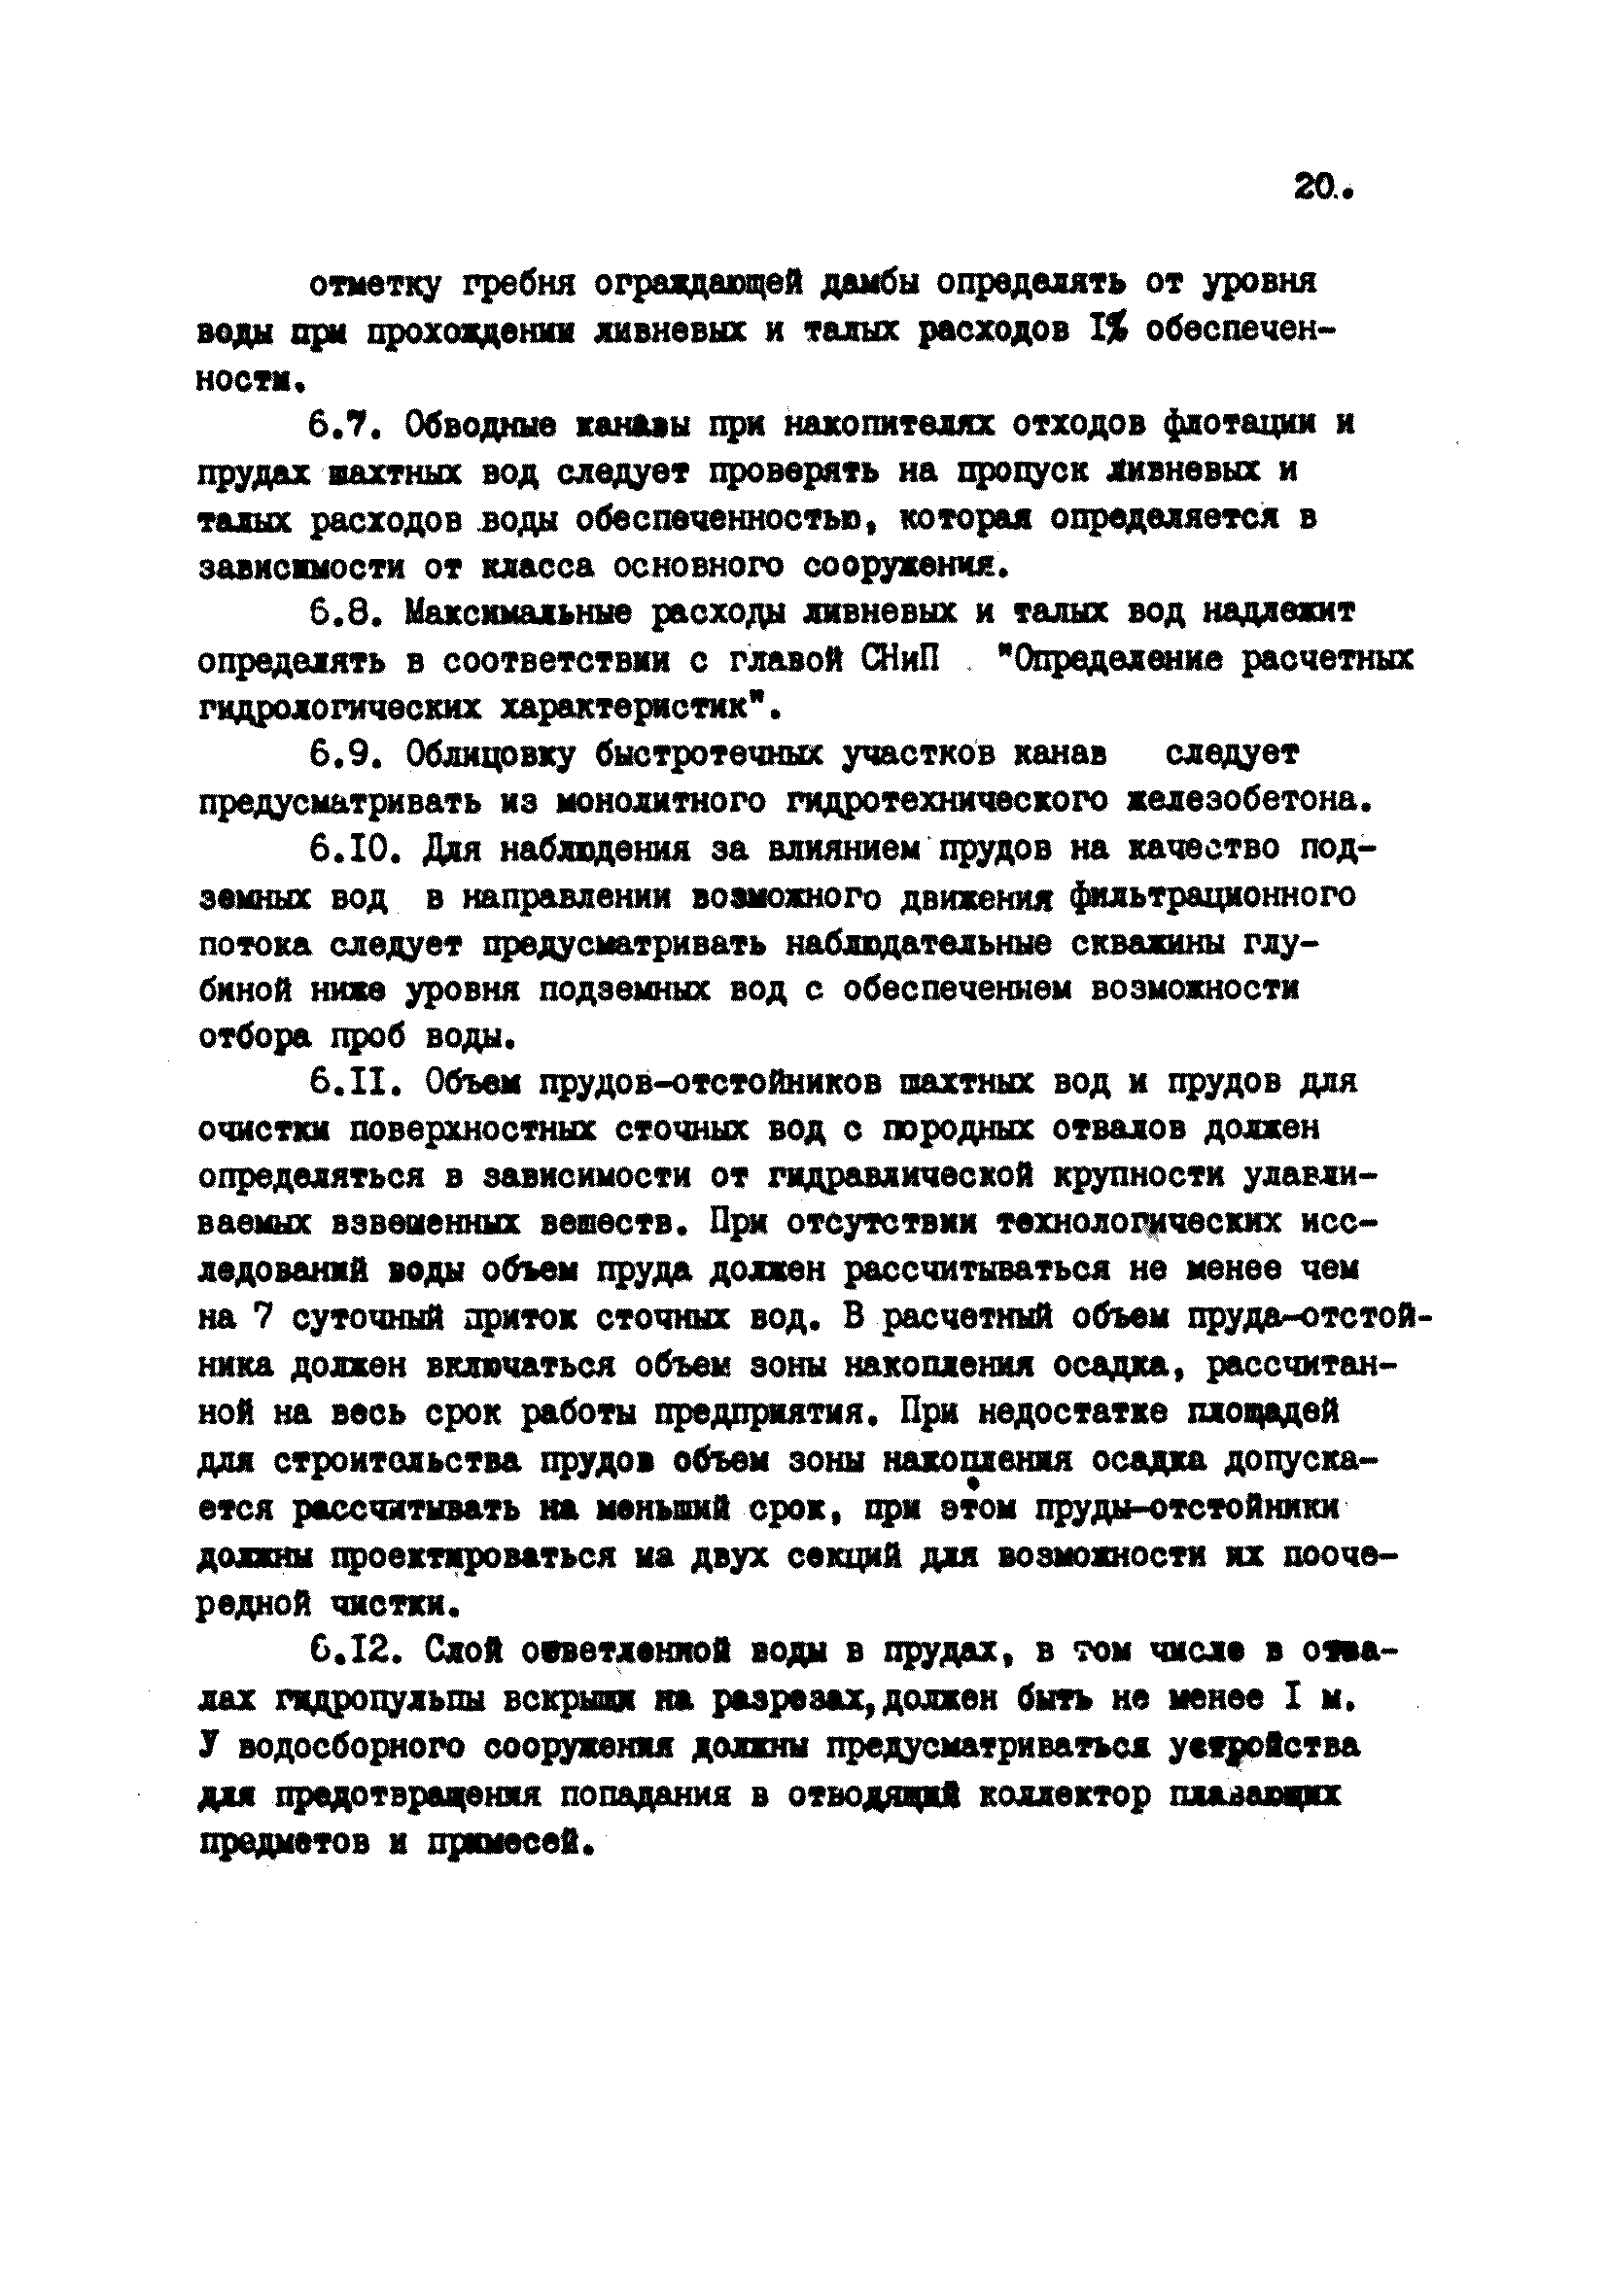 ВНТП 38-84